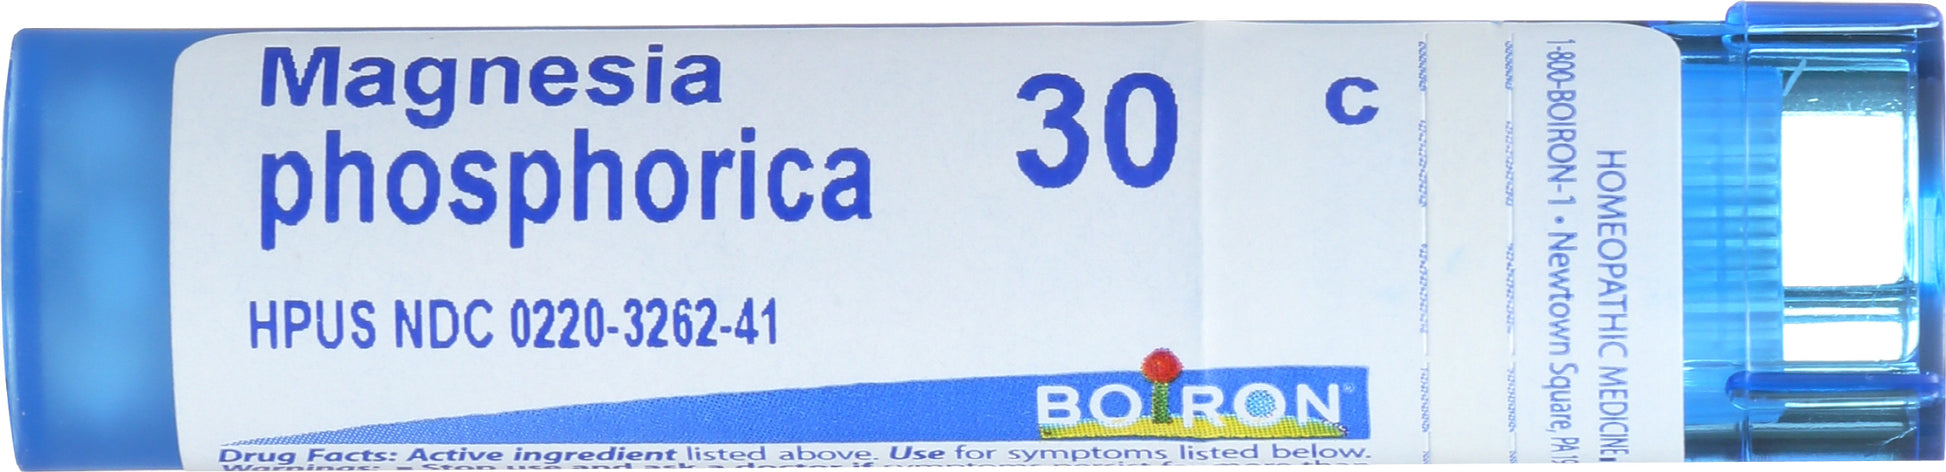 Boiron Magnesia phosphorica 30c